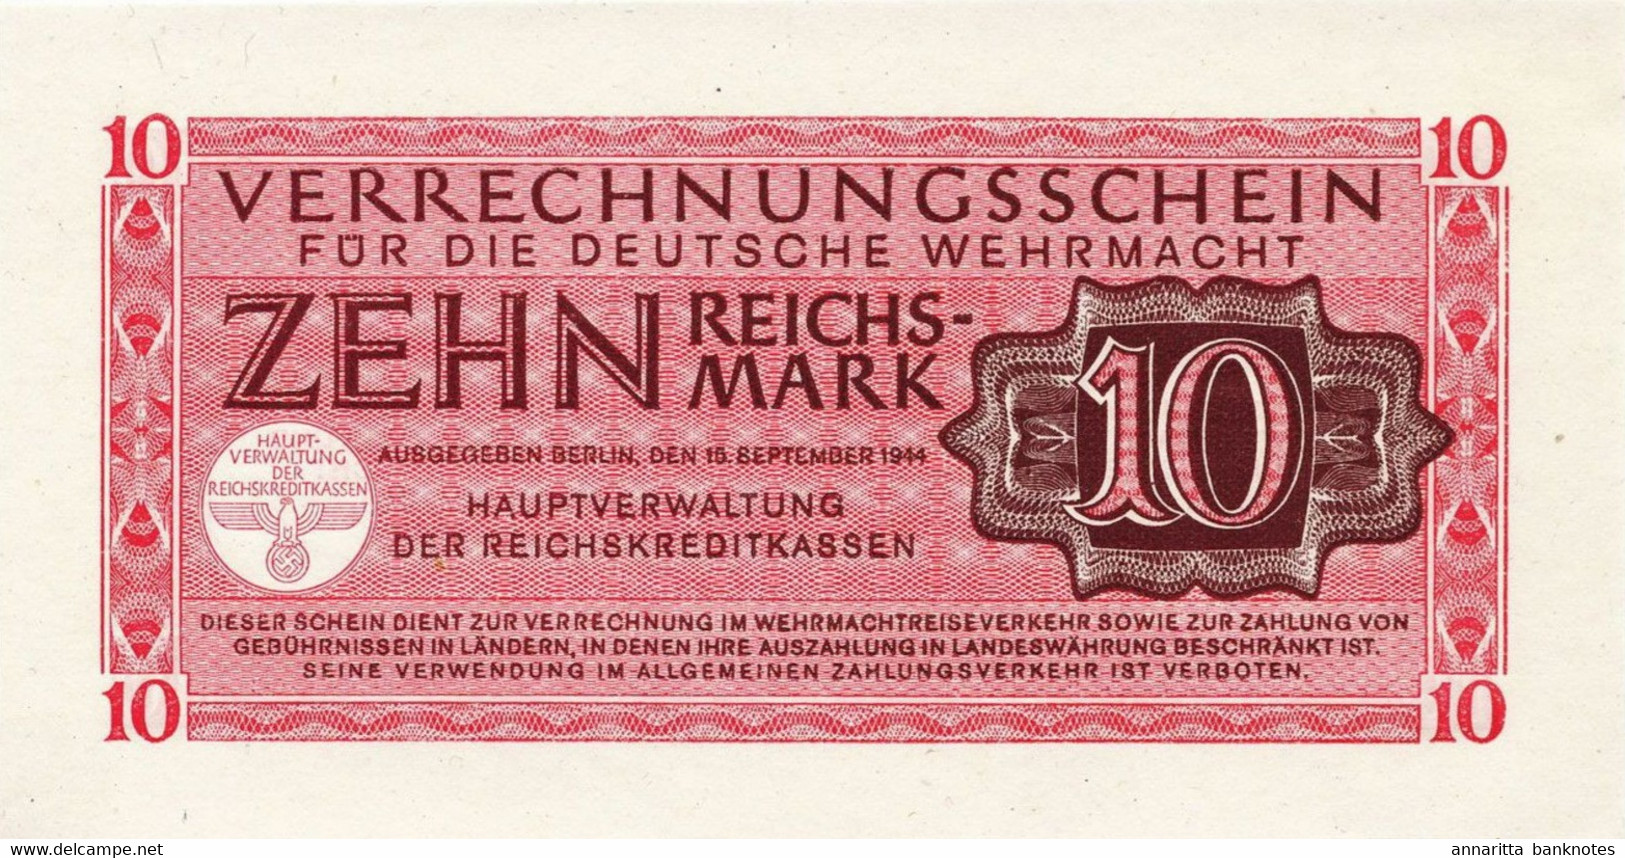 Germany 10 Reichsmark 1944, (Wehrmacht) UNC (P-M40a, B-409b) - 10 Reichsmark